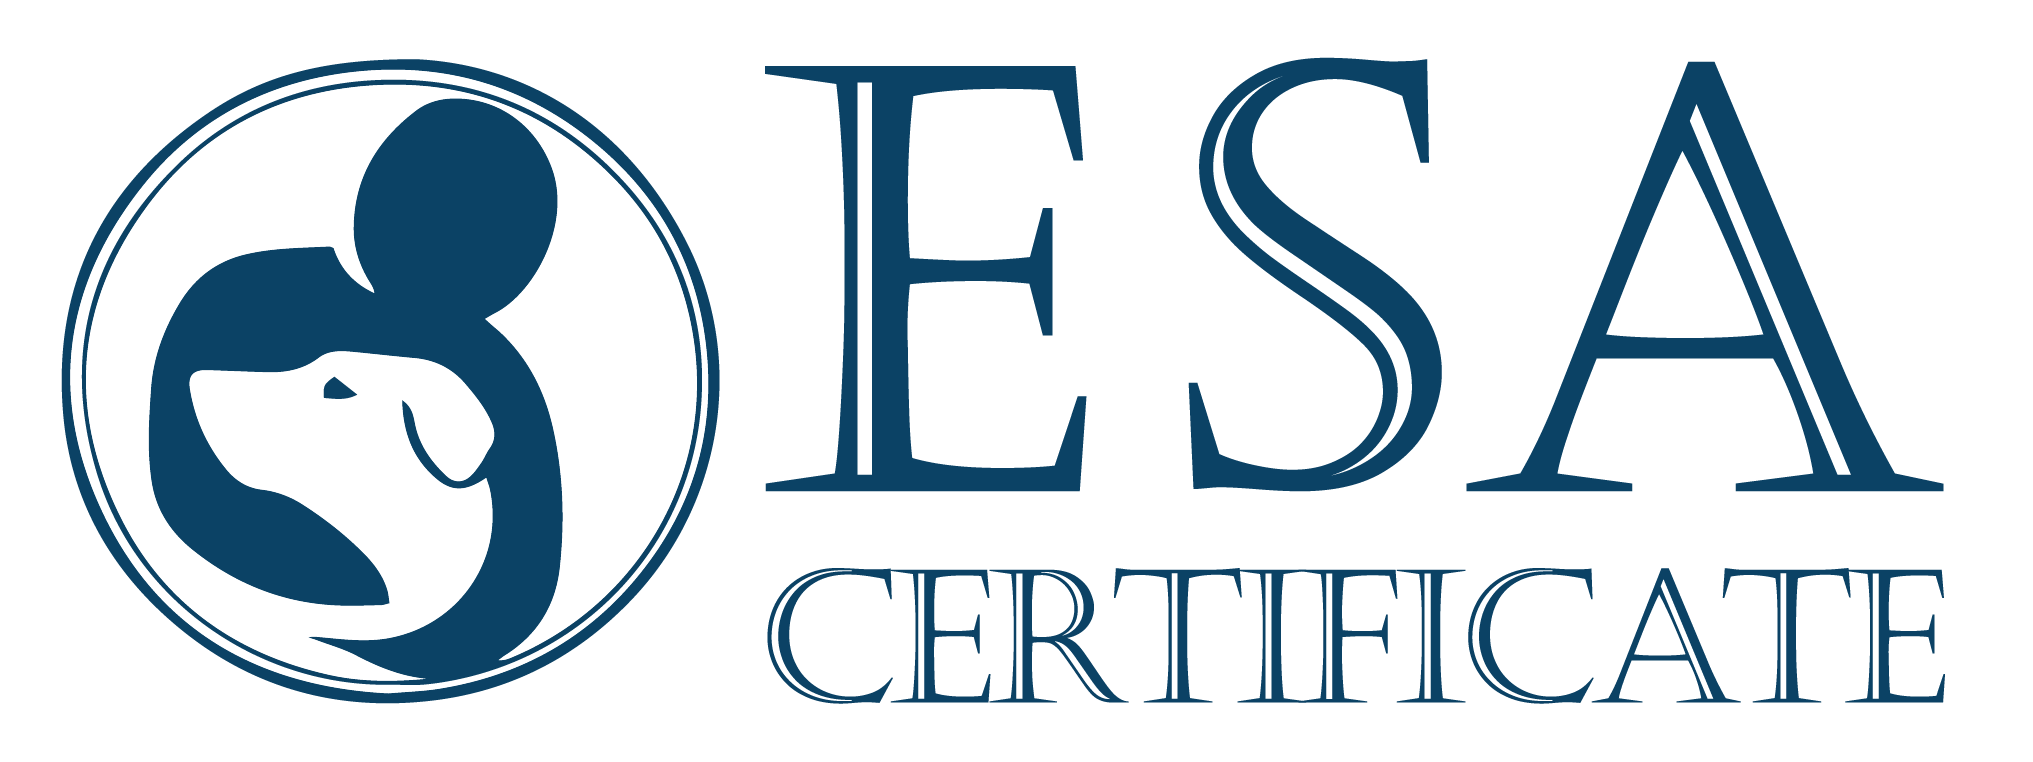 ESA Certificate